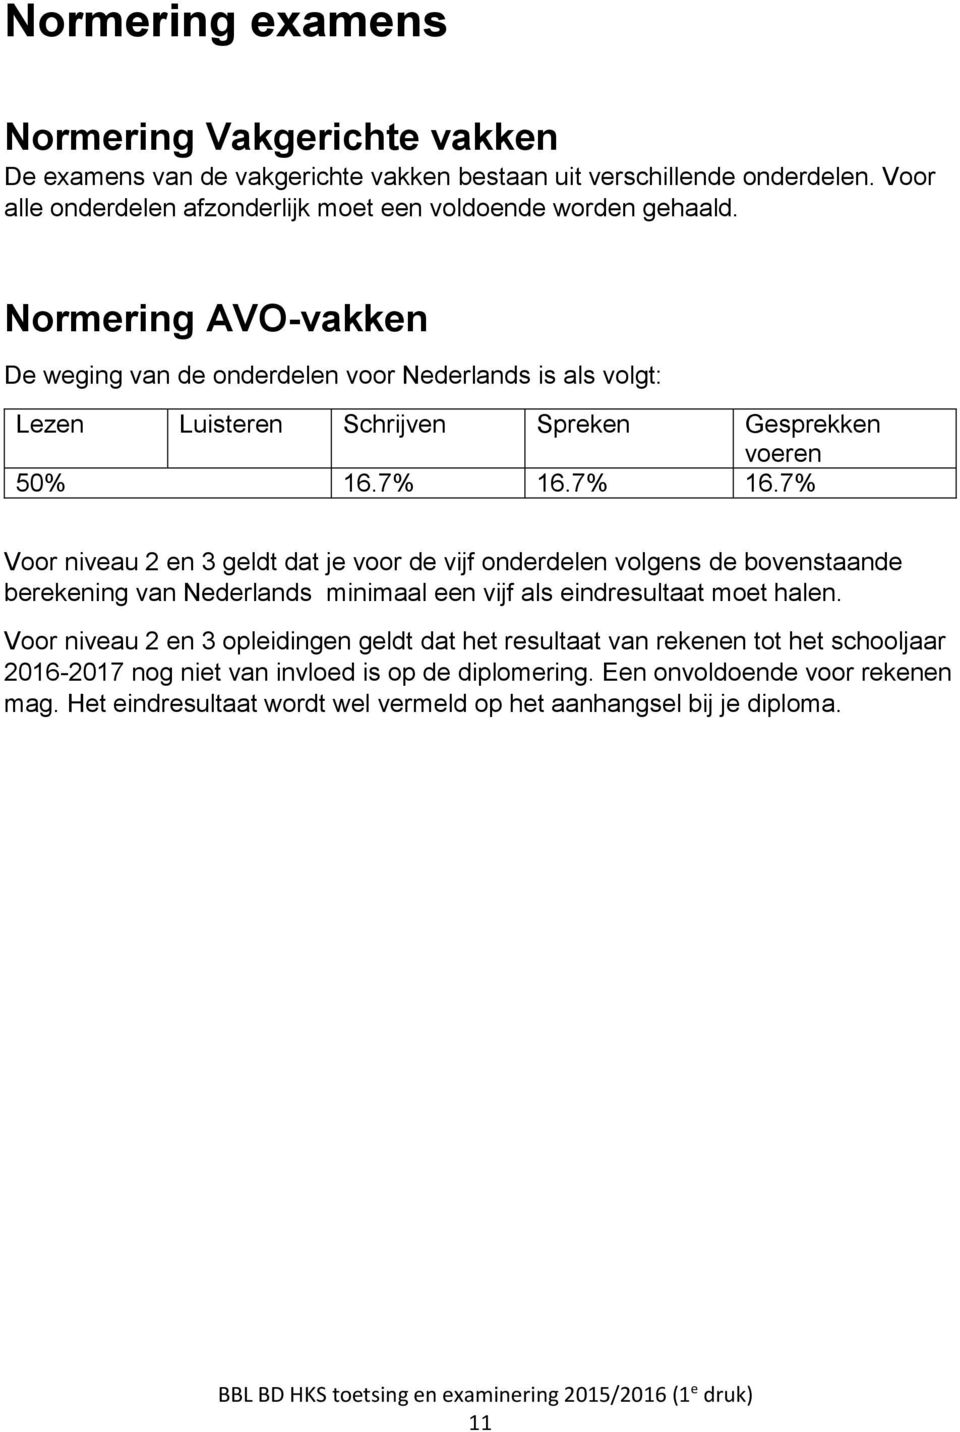 Normering AVO-vakken De weging van de onderdelen voor Nederlands is als volgt: Lezen Luisteren Schrijven Spreken Gesprekken voeren 50% 16.7% 16.